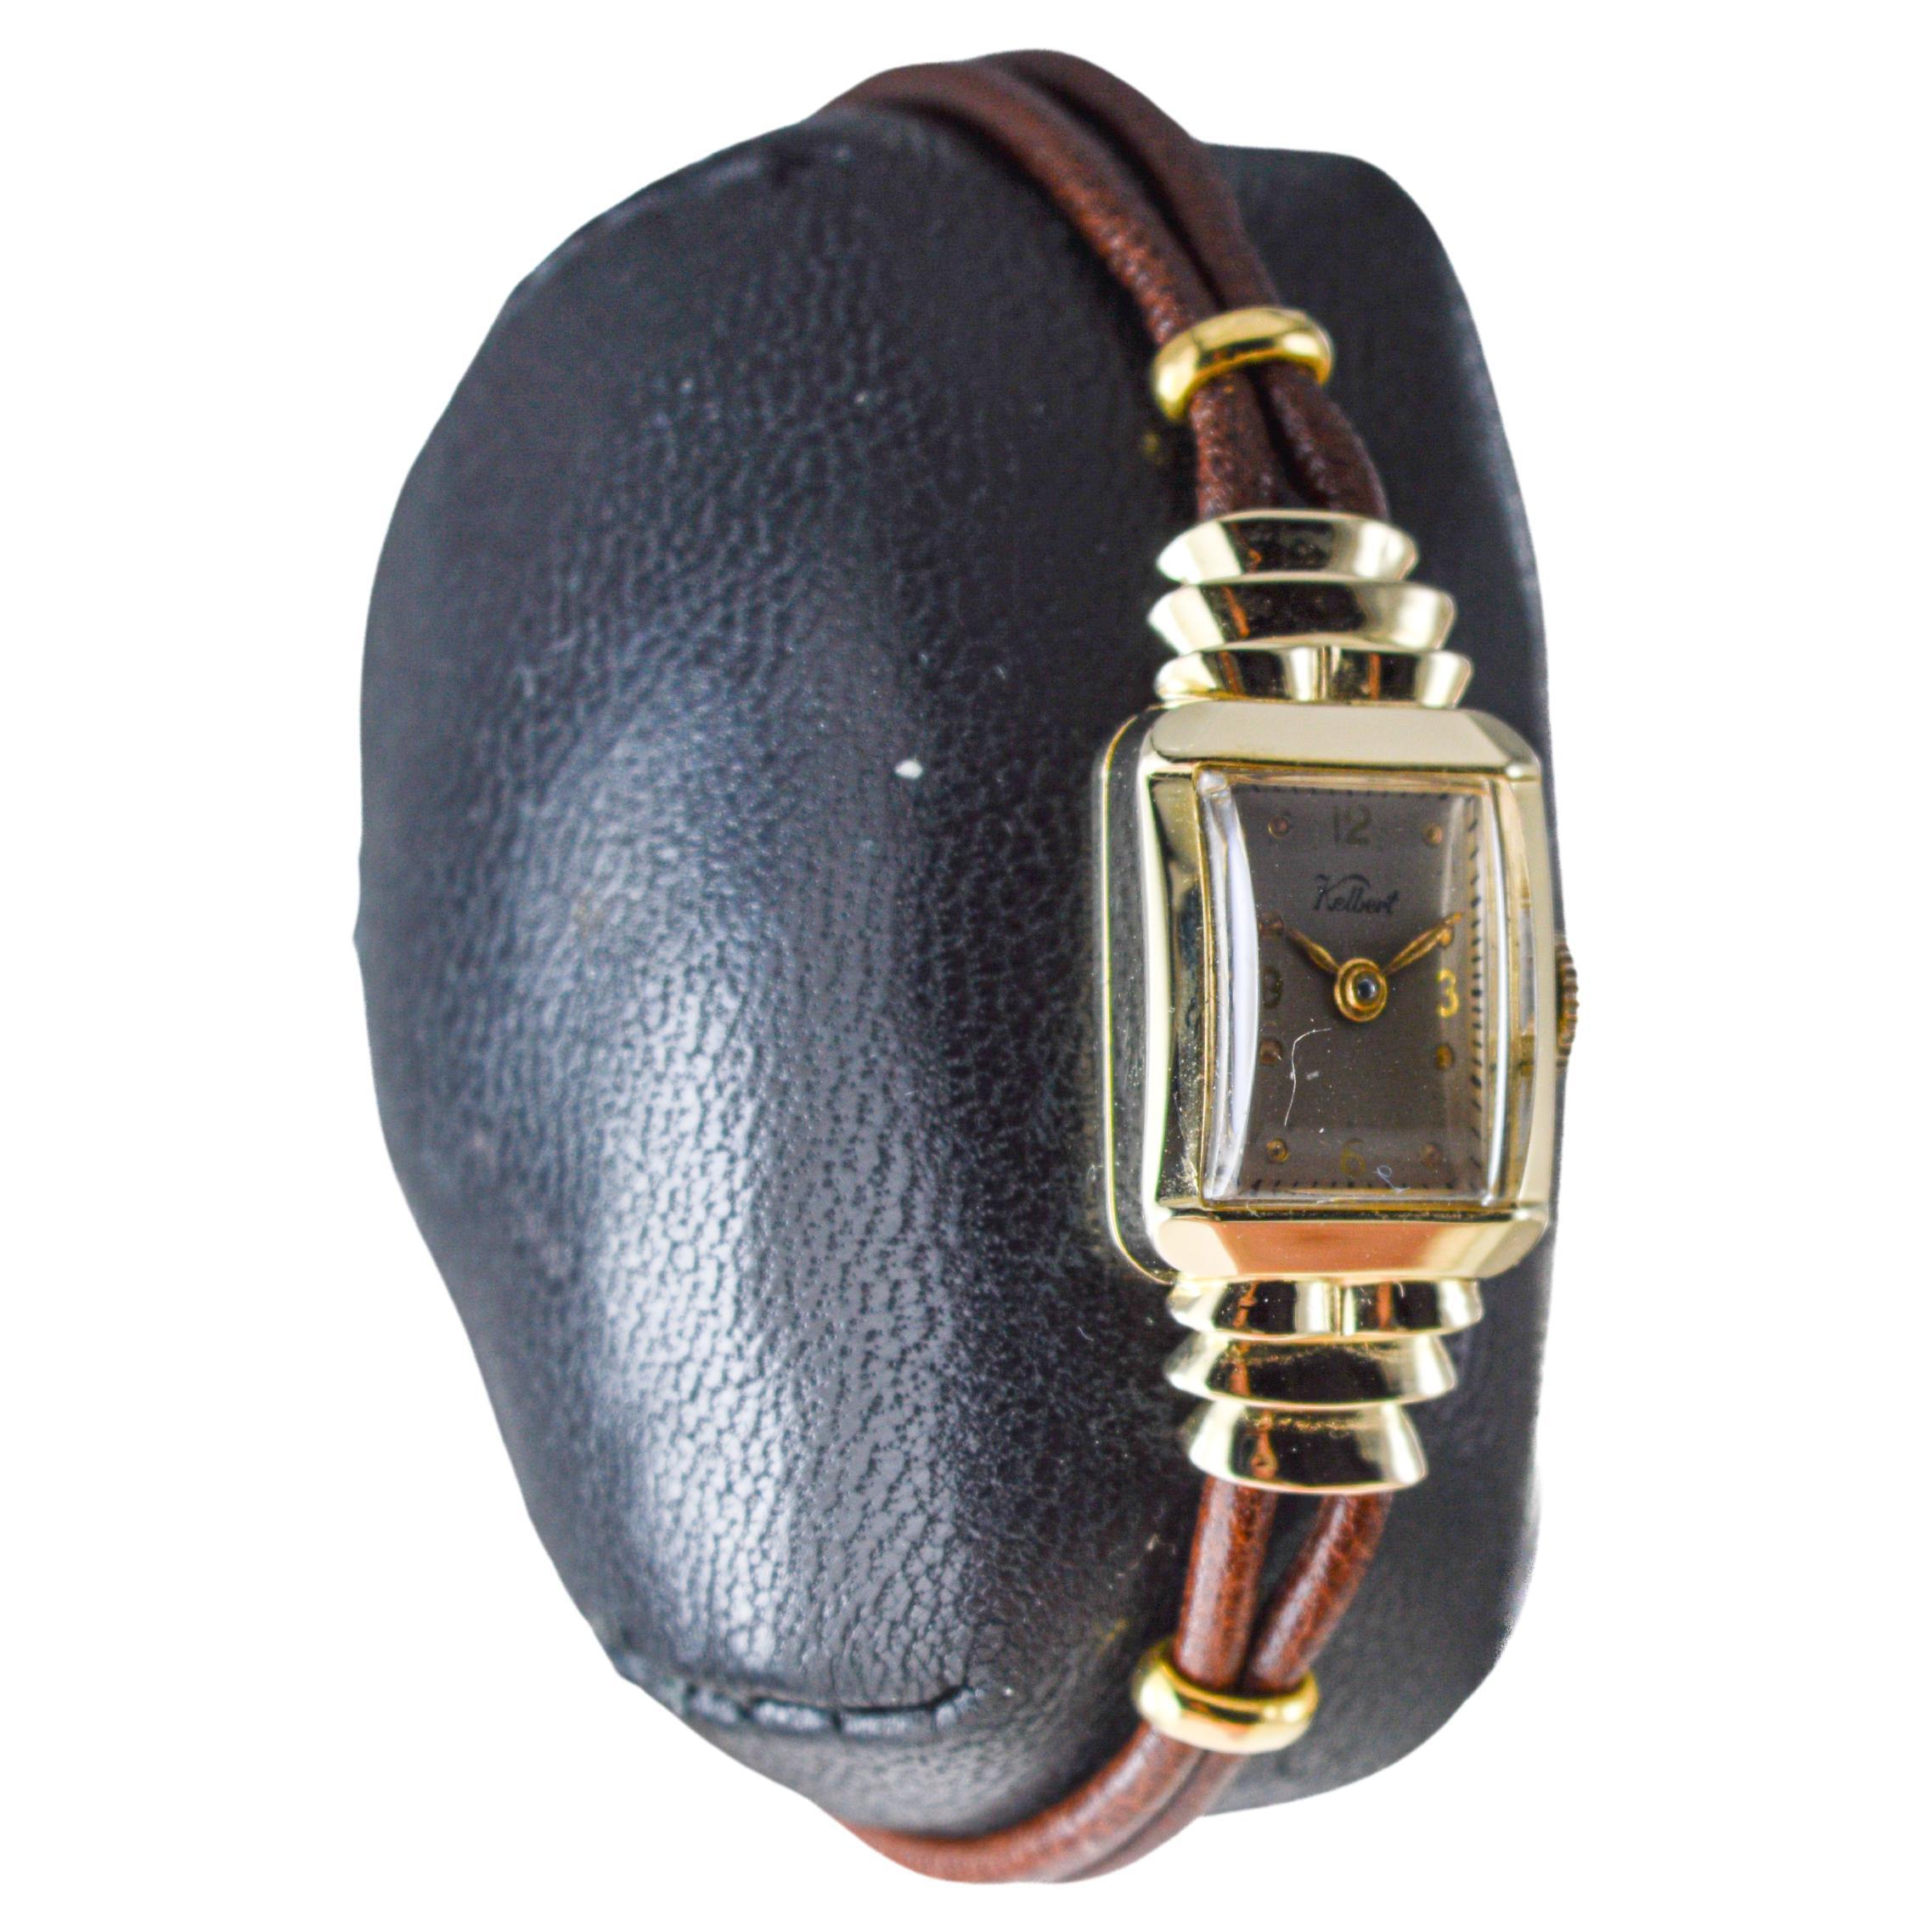 FABRIK / HAUS: Kelbert Watch Company
STIL / REFERENZ: Art Deco 
METALL / MATERIAL: 14Kt. Massiv-Gelbgold 
CIRCA / JAHR: 1950er Jahre
ABMESSUNGEN / GRÖSSE: Länge 30mm X Breite 14mm
UHRWERK / KALIBER: Handaufzug / 17 Jewels  
ZIFFERBLATT / ZEIGER: